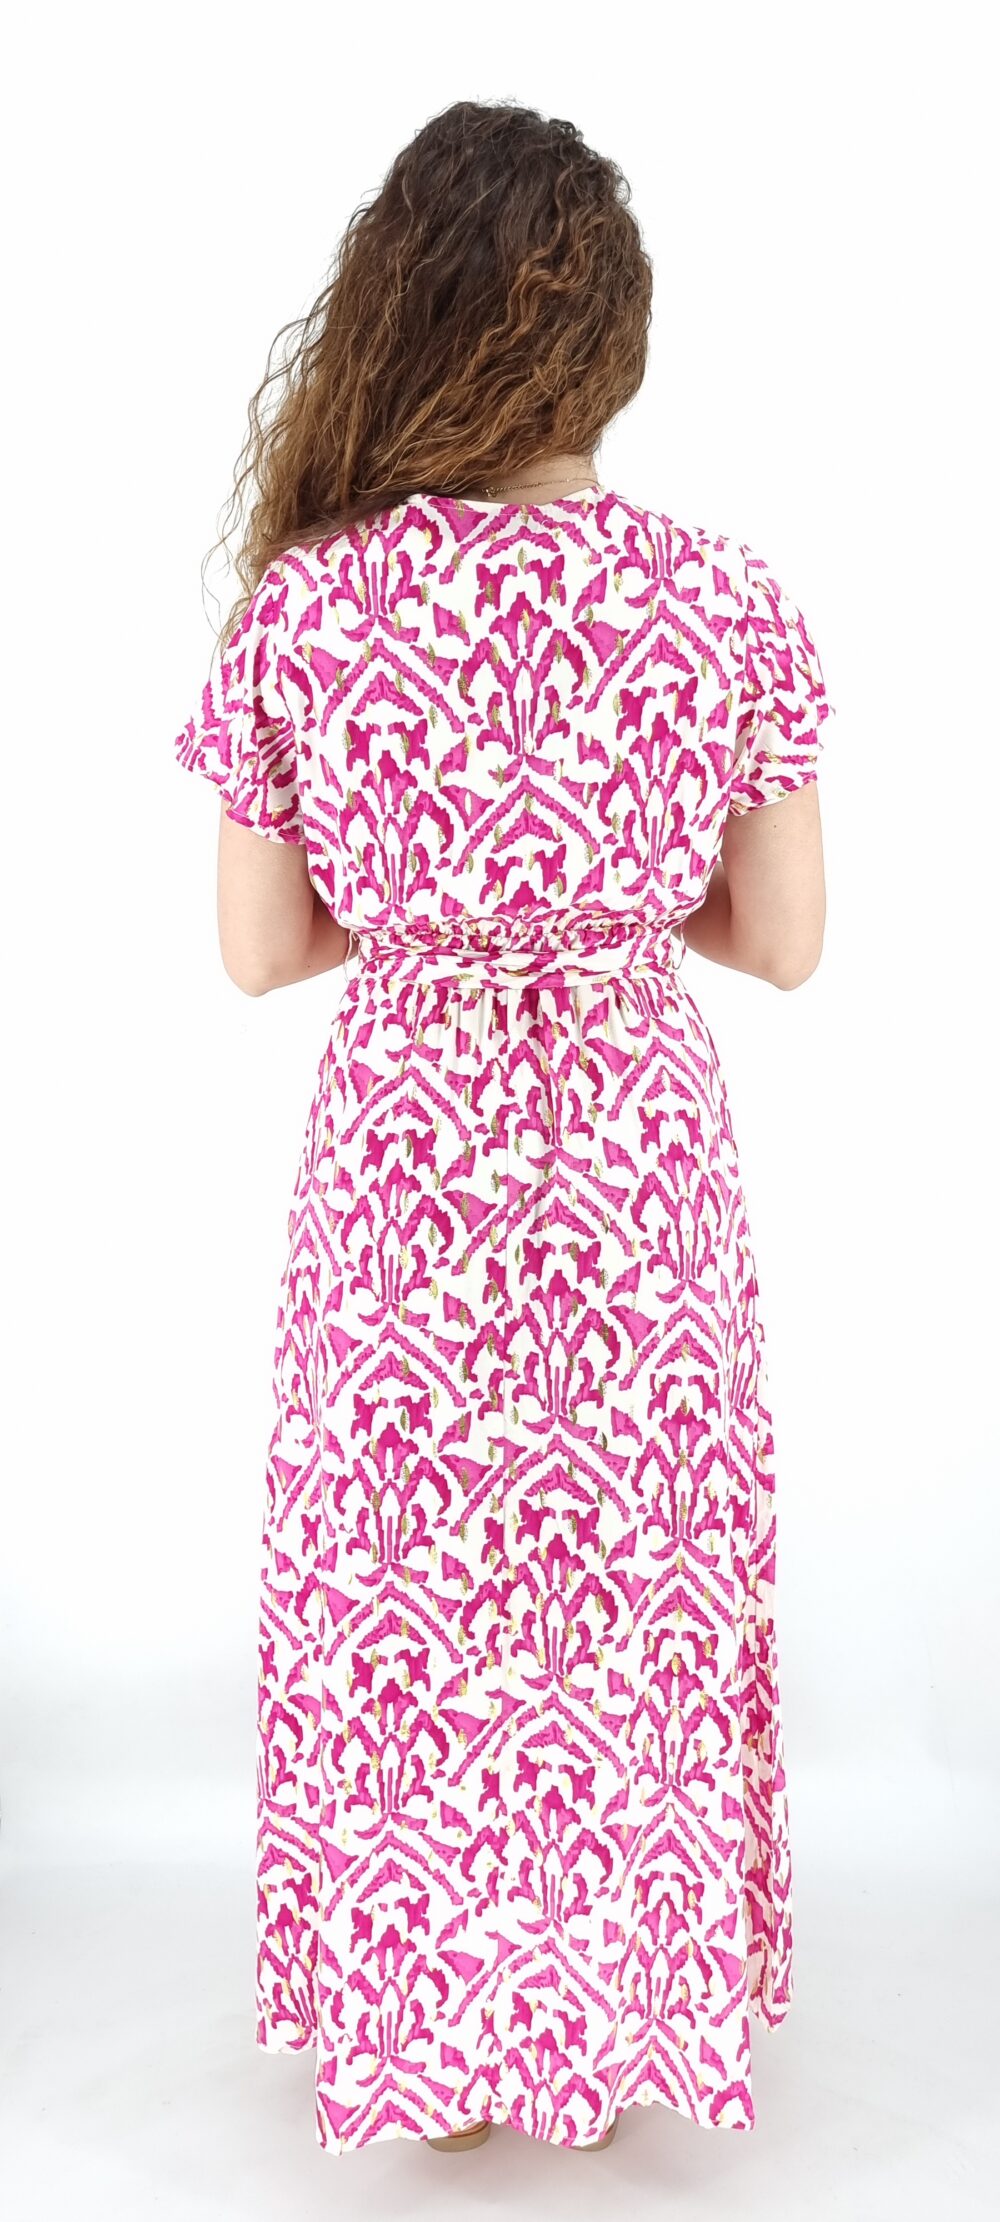 Φόρεμα μακρύ κρουαζέ με ίδια ζώνη και σχέδια ροζ